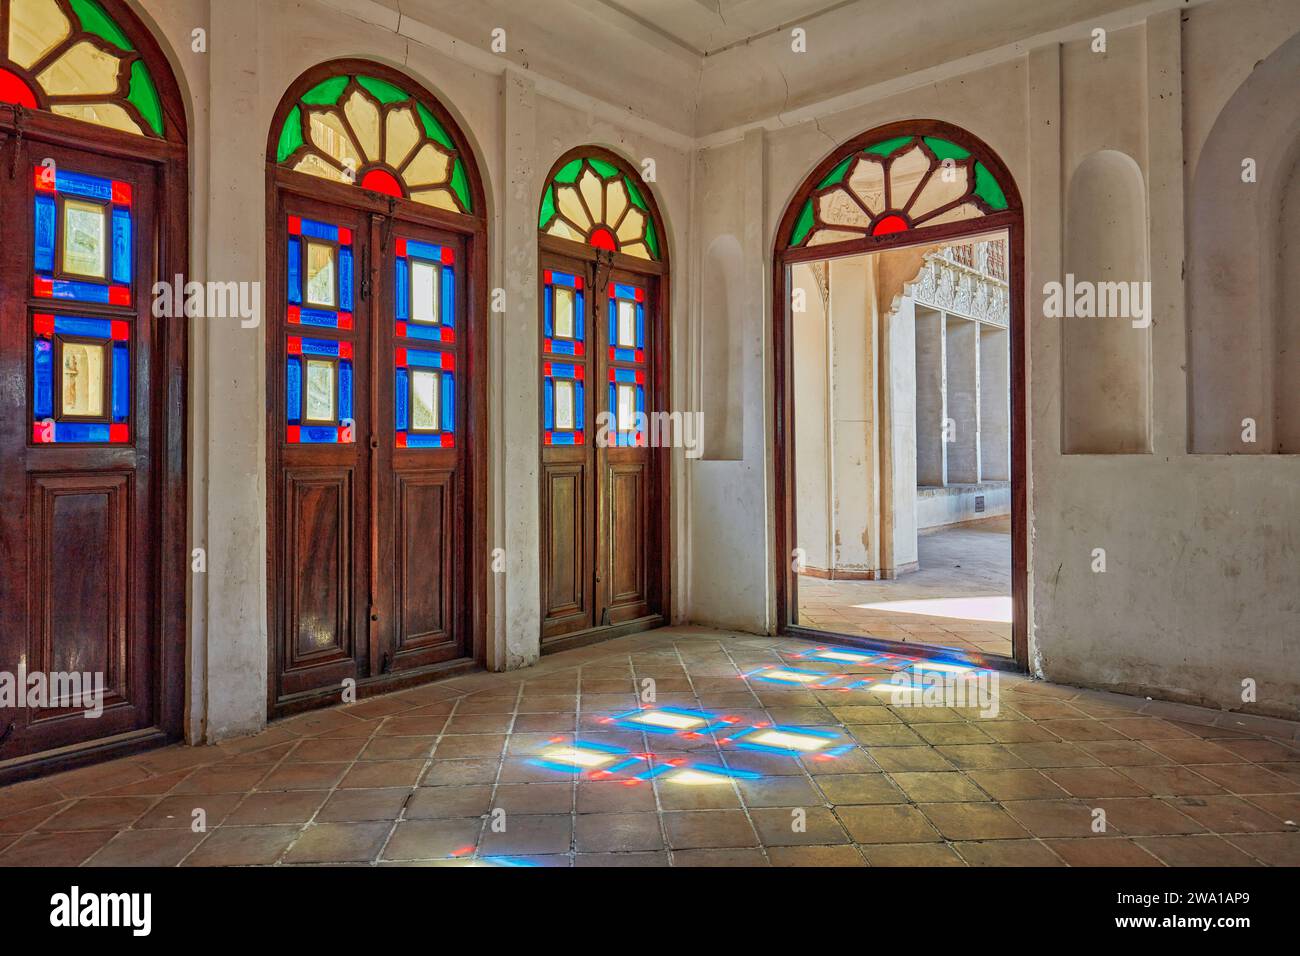 Vieilles portes en bois avec des vitraux colorés dans l'une des chambres de la Maison Tabatabaei, un manoir historique construit vers 1880 à Kashan, en Iran Banque D'Images